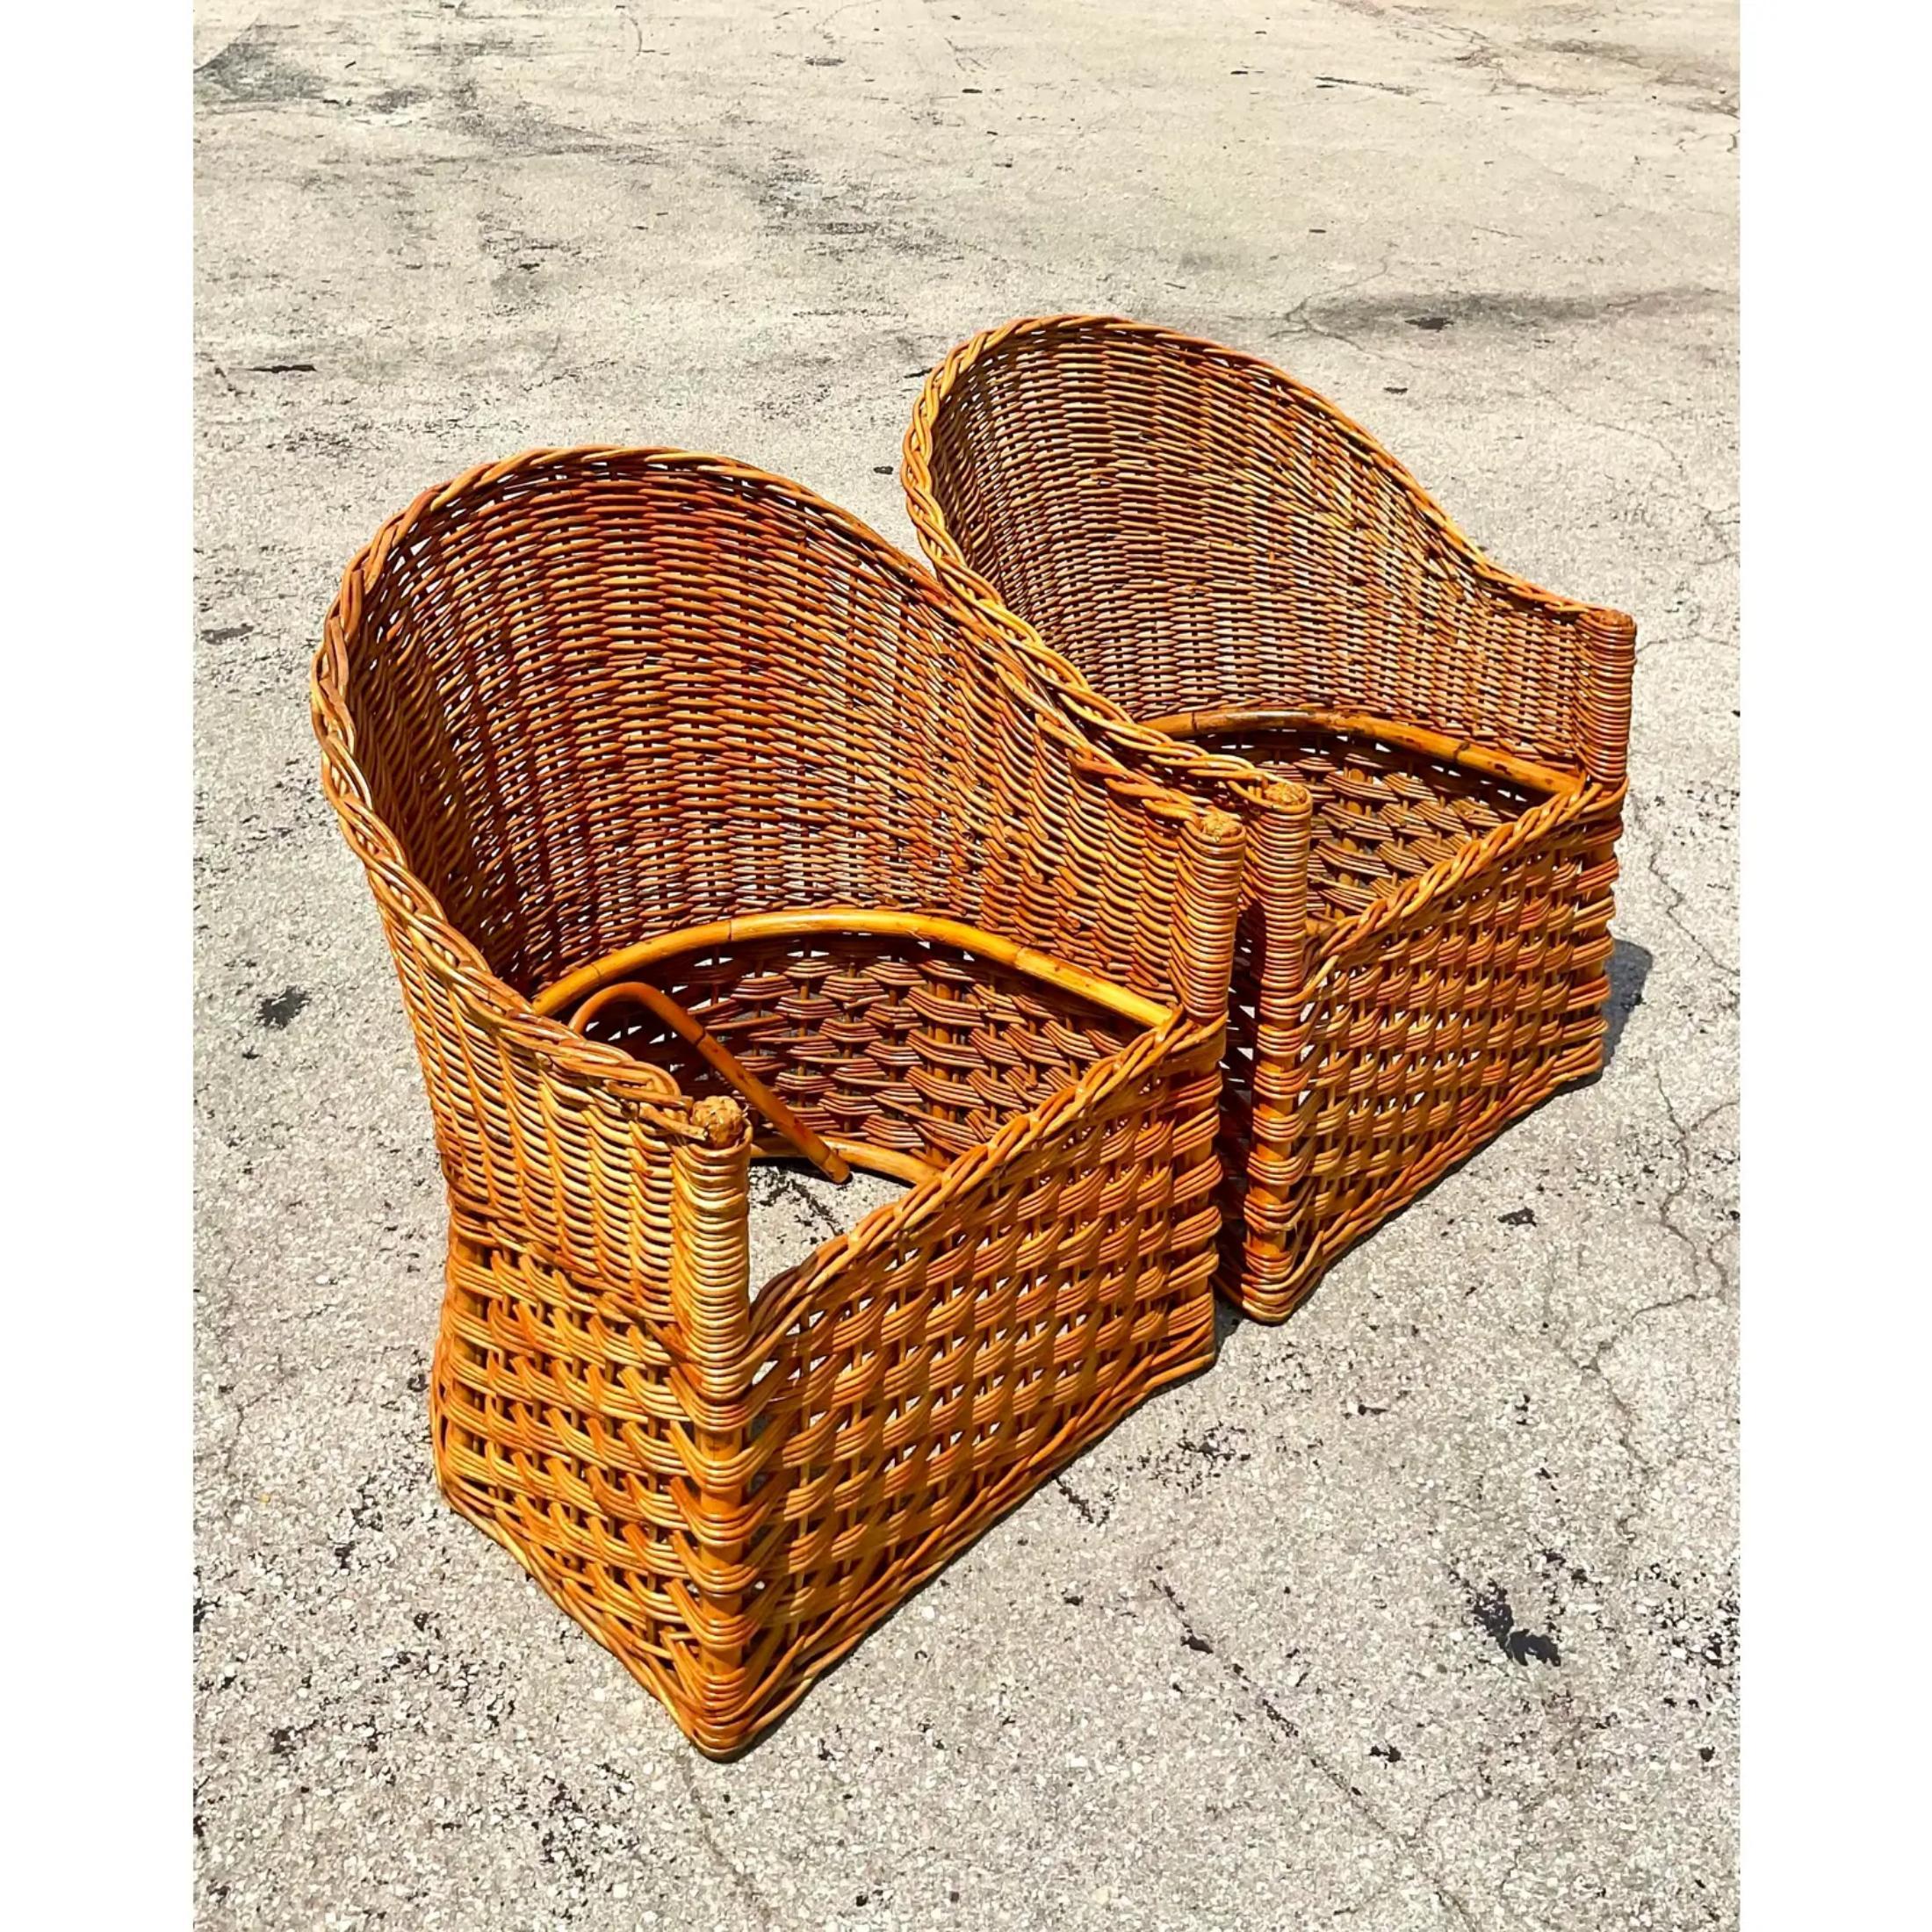 Une superbe paire de chaises à baignoire vintage de la marque Coastal. Magnifique rotin tressé fabriqué par le groupe Wicker Works en Italie. Forme chic et épurée. Acquis d'une propriété de Palm Beach.